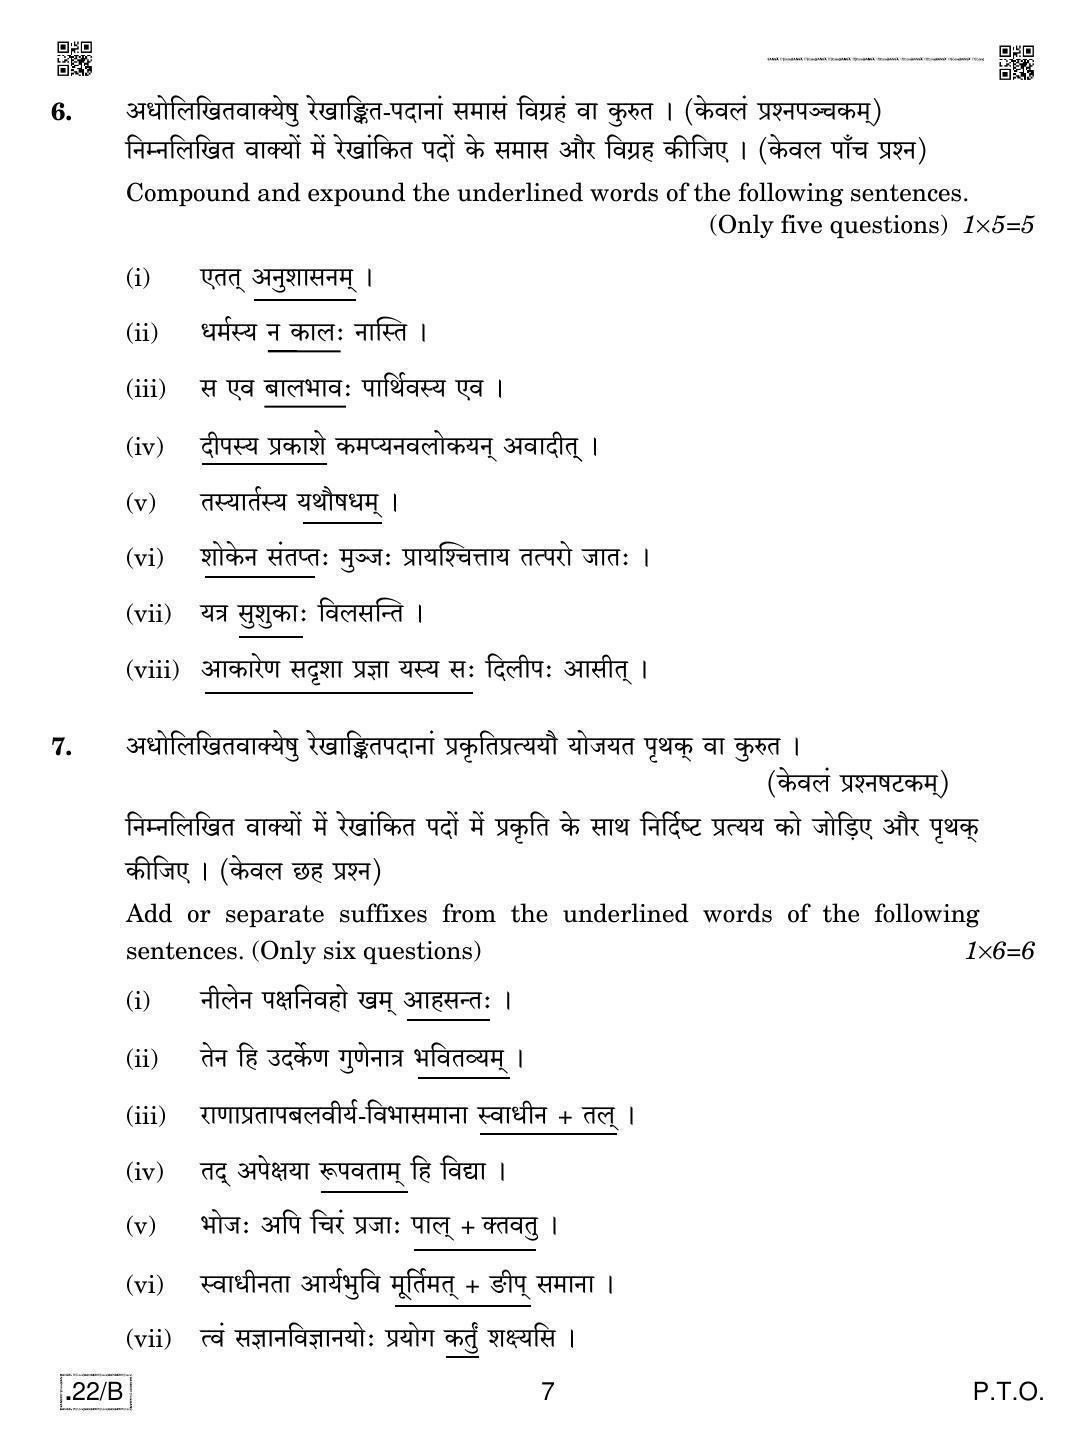 CBSE Class 12 Sanskrit Core 2020 Compartment Question Paper - Page 7